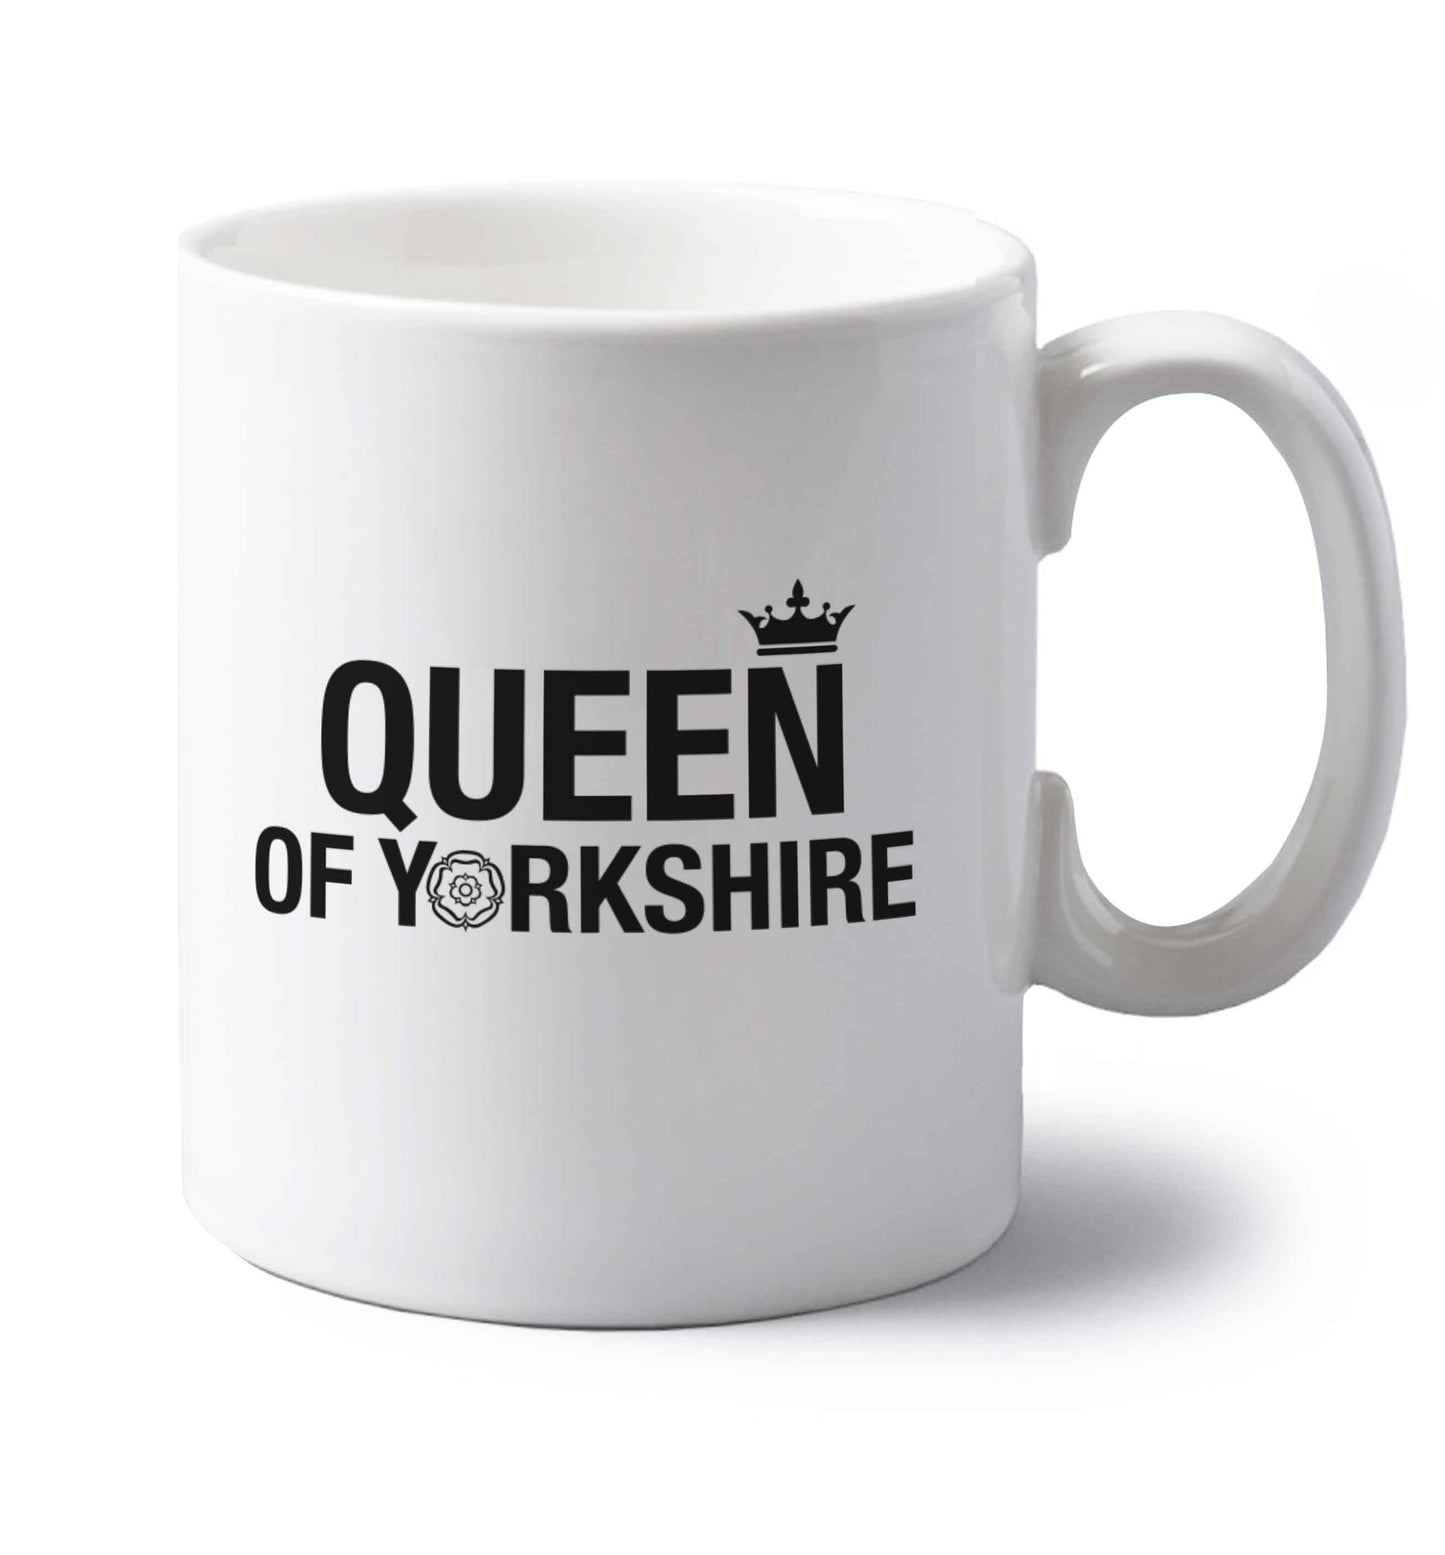 Queen of Yorkshire left handed white ceramic mug 